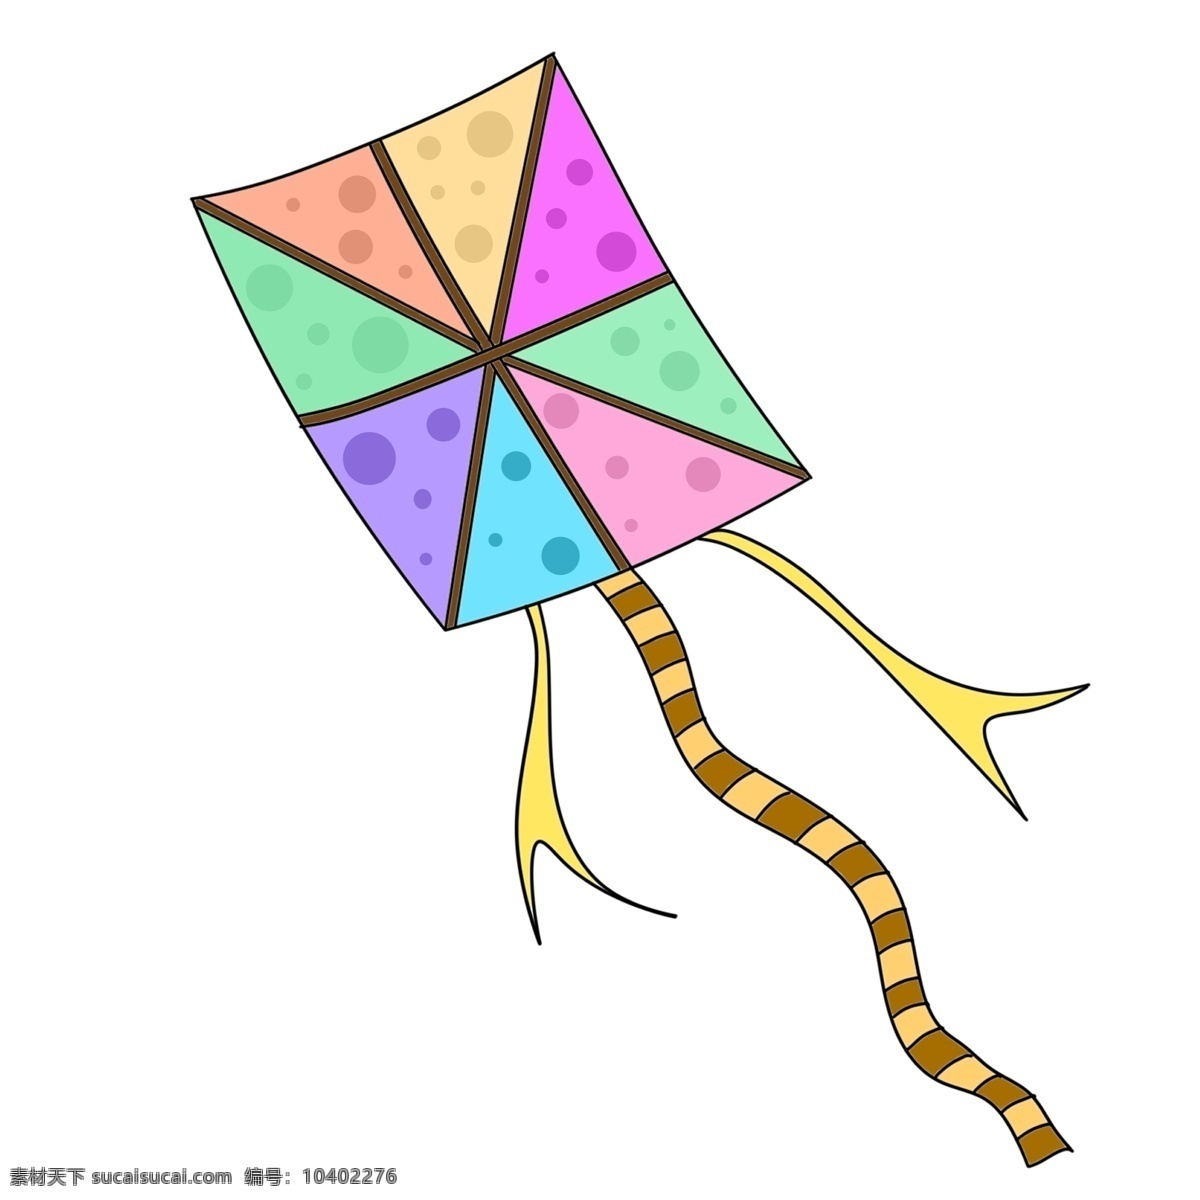 方形 彩色 卡通 风筝 飞行的风筝 卡通风筝插画 创意风筝插画 精美的风筝 彩色风筝 方形风筝